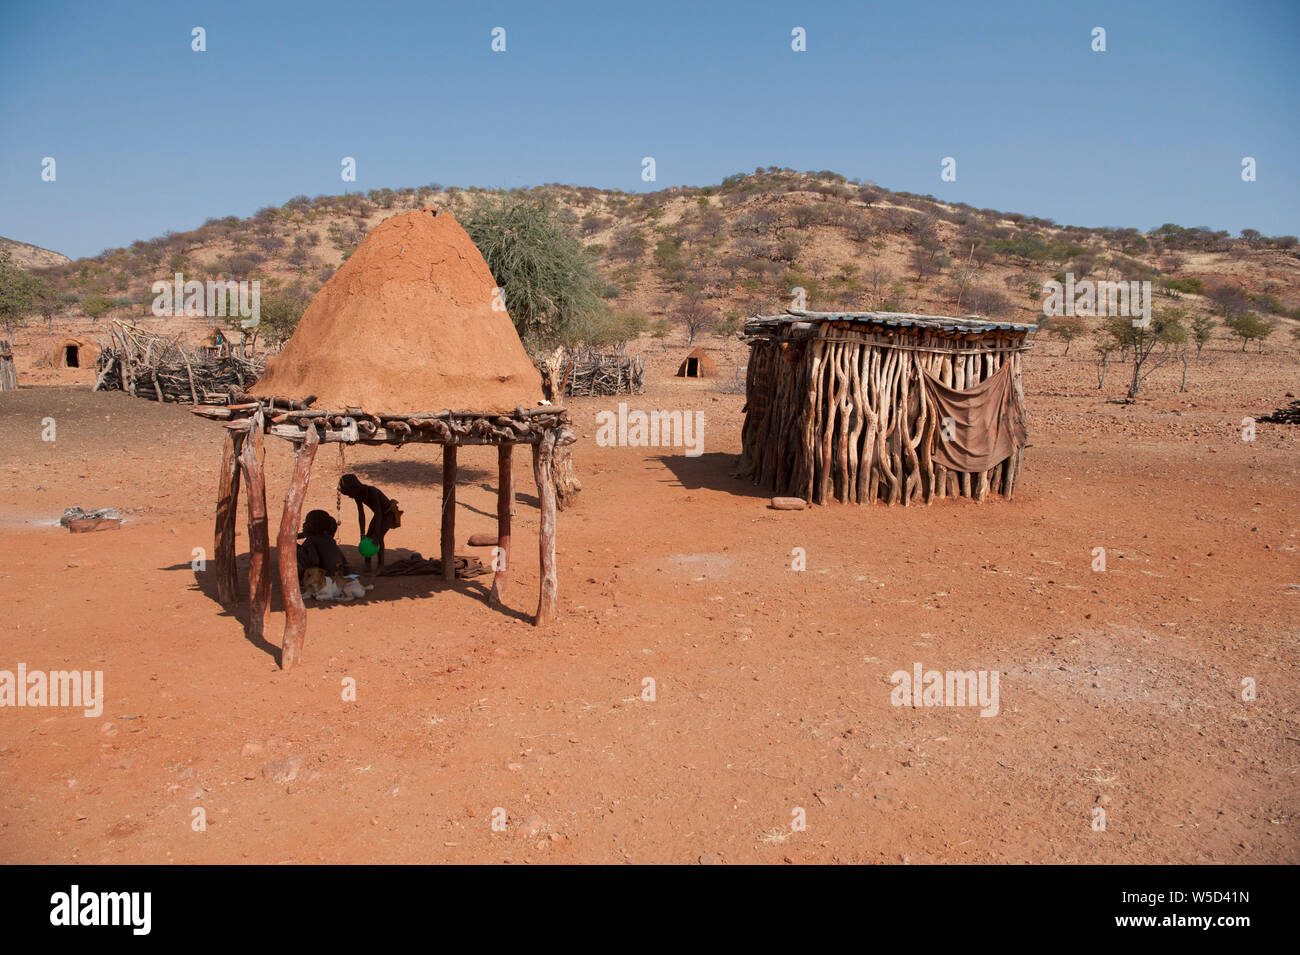 Village de la tribu Himba, Kaokoveld, Namibie, Afrique. Le hangar de droite est utilisé pour le stockage de céréales ou de bétail Banque D'Images